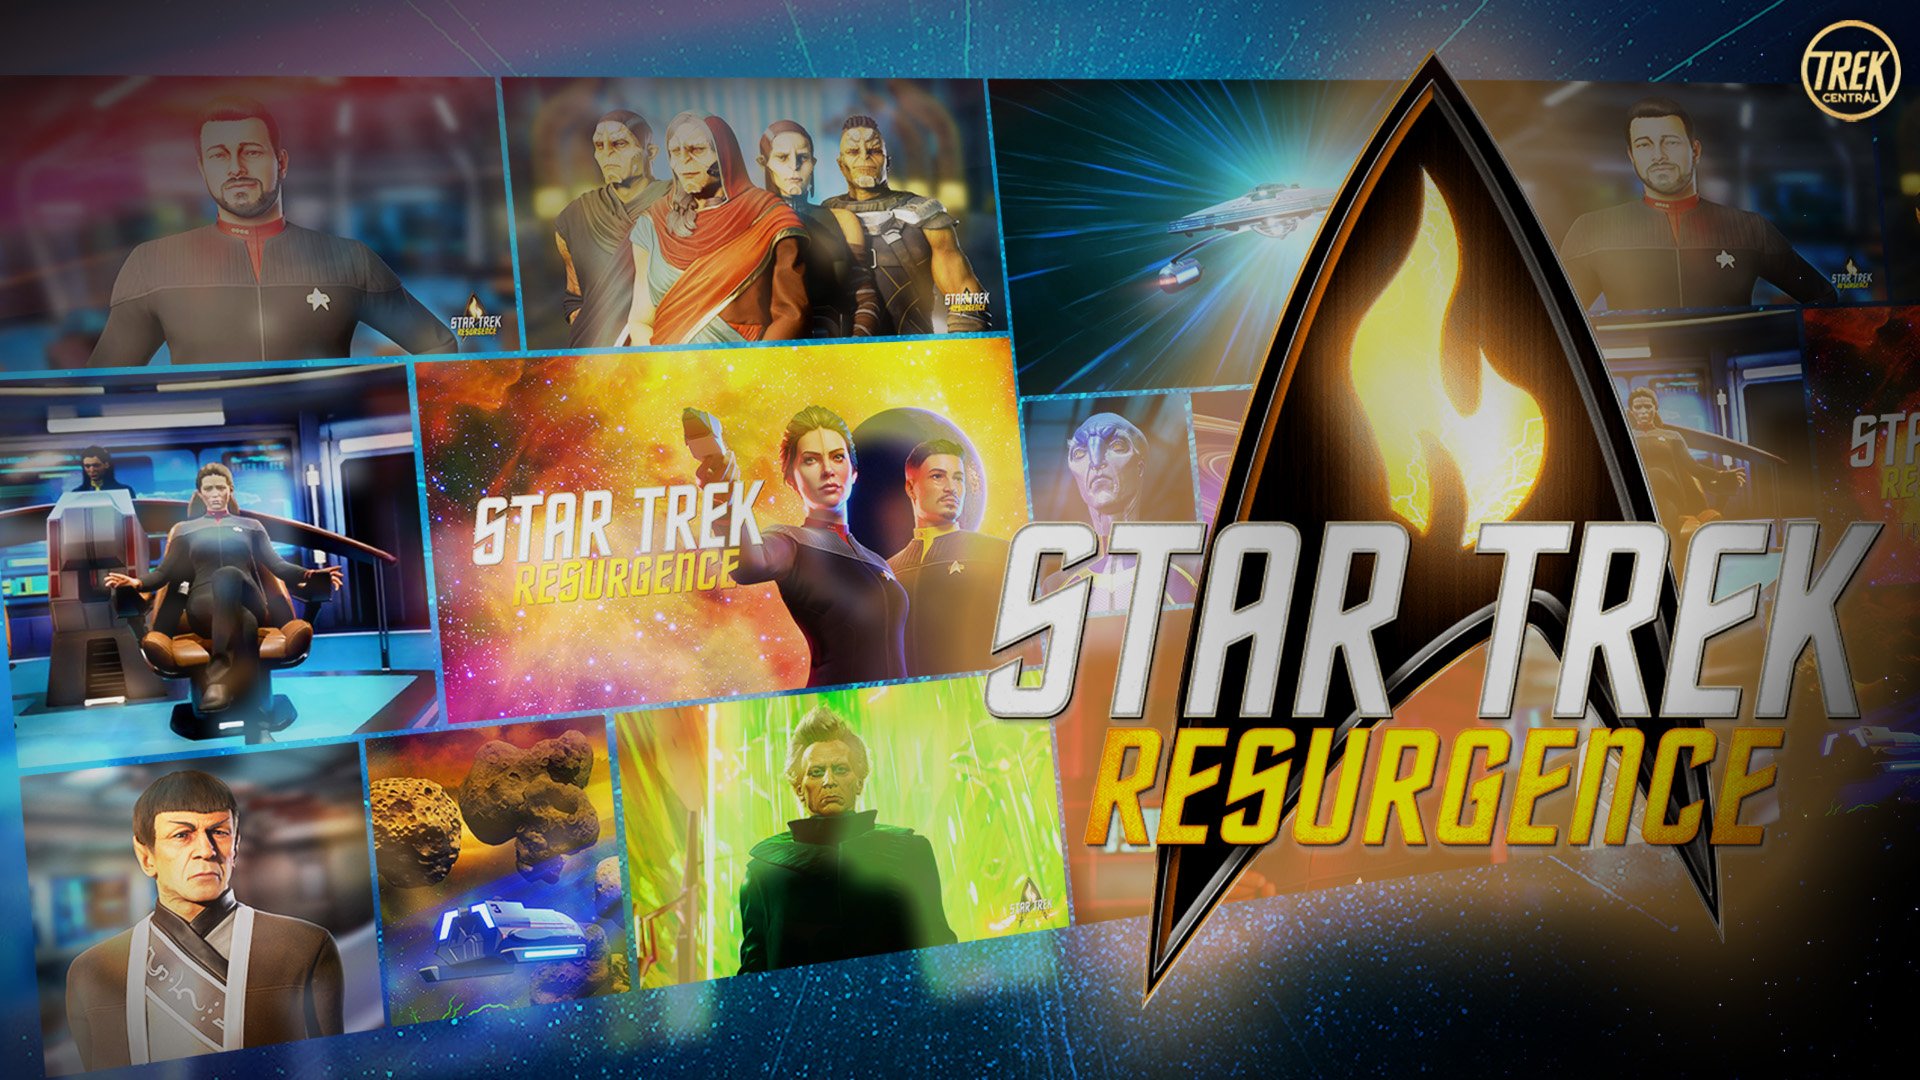 Star Trek Resurgence Is an Intriguing Blend of Classic Trek and